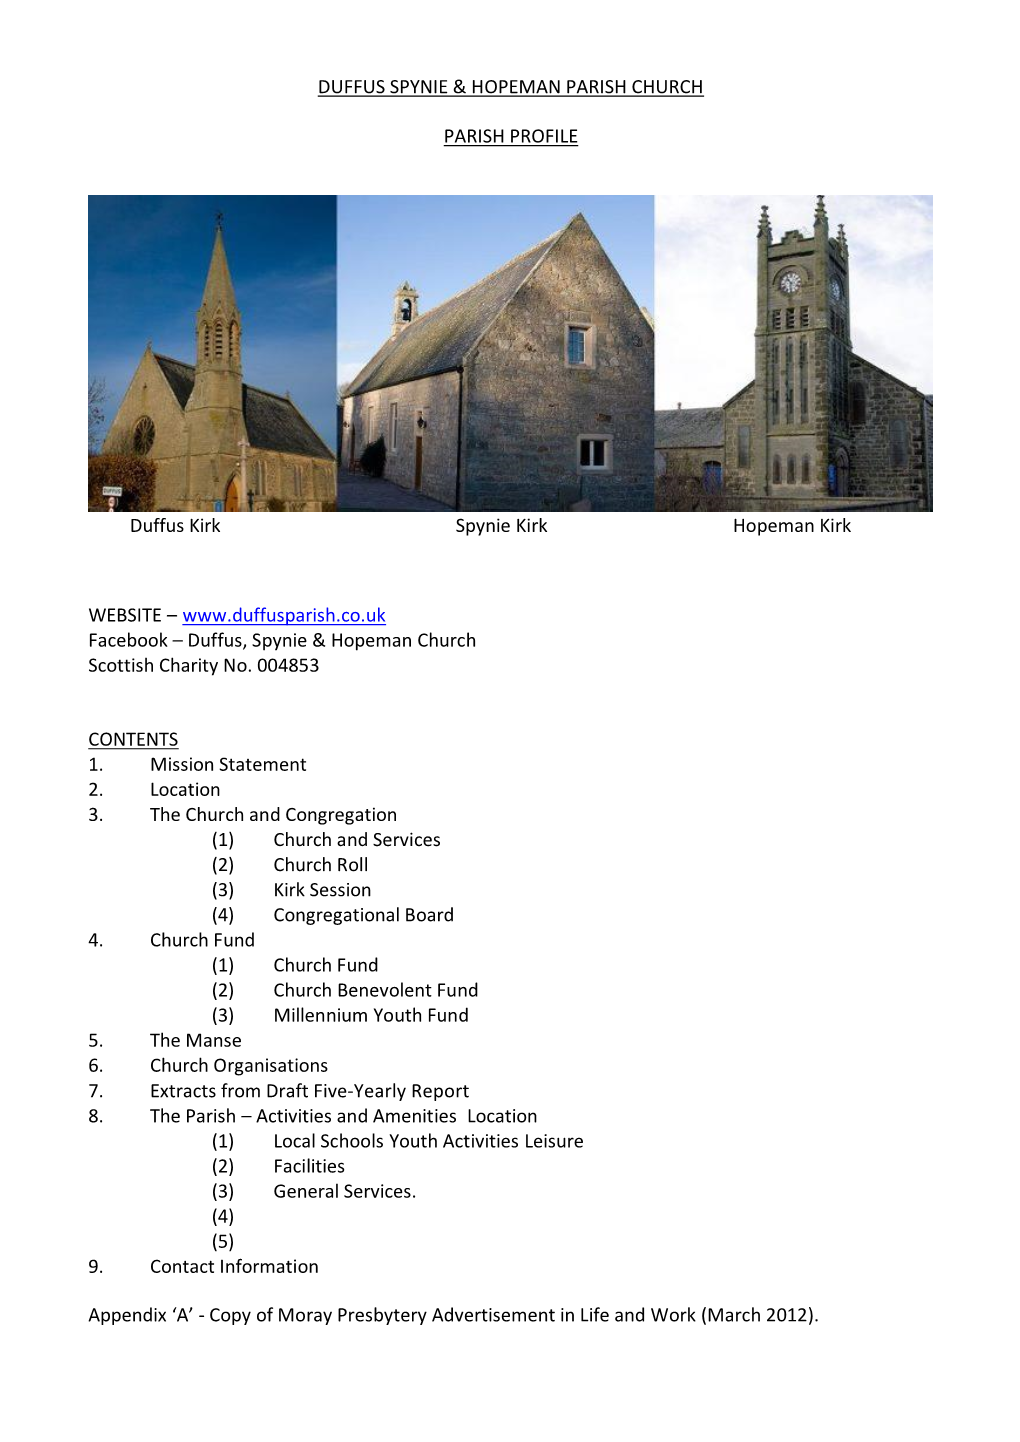 Duffus, Spynie & Hopeman Parish Churches